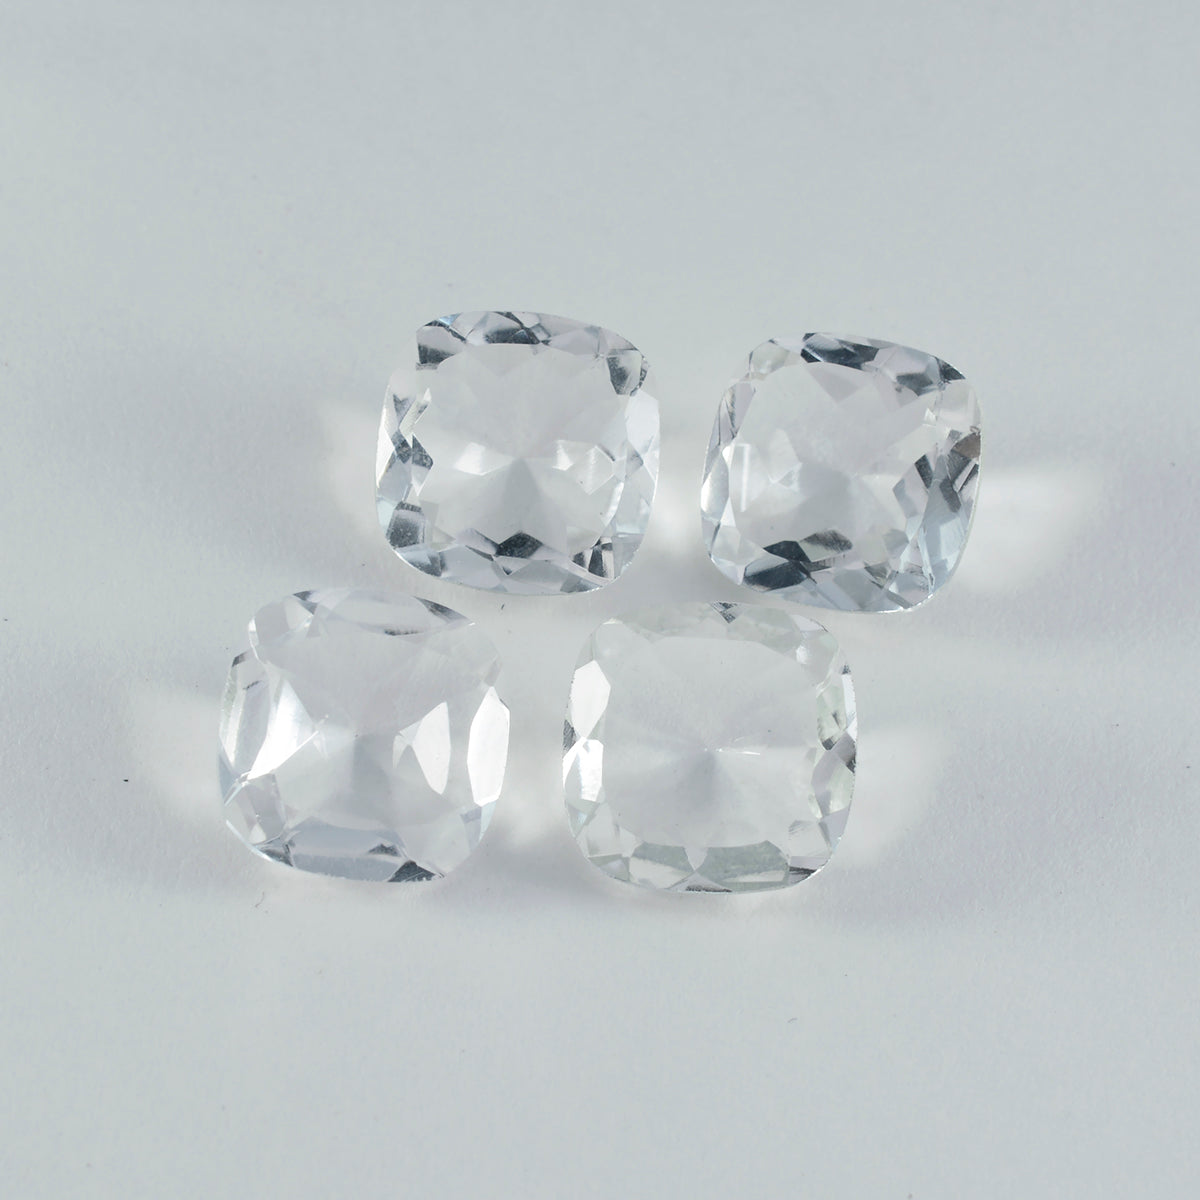 riyogems 1 шт., белый кристалл кварца, граненый, 12x12 мм, в форме подушки, красивый качественный драгоценный камень